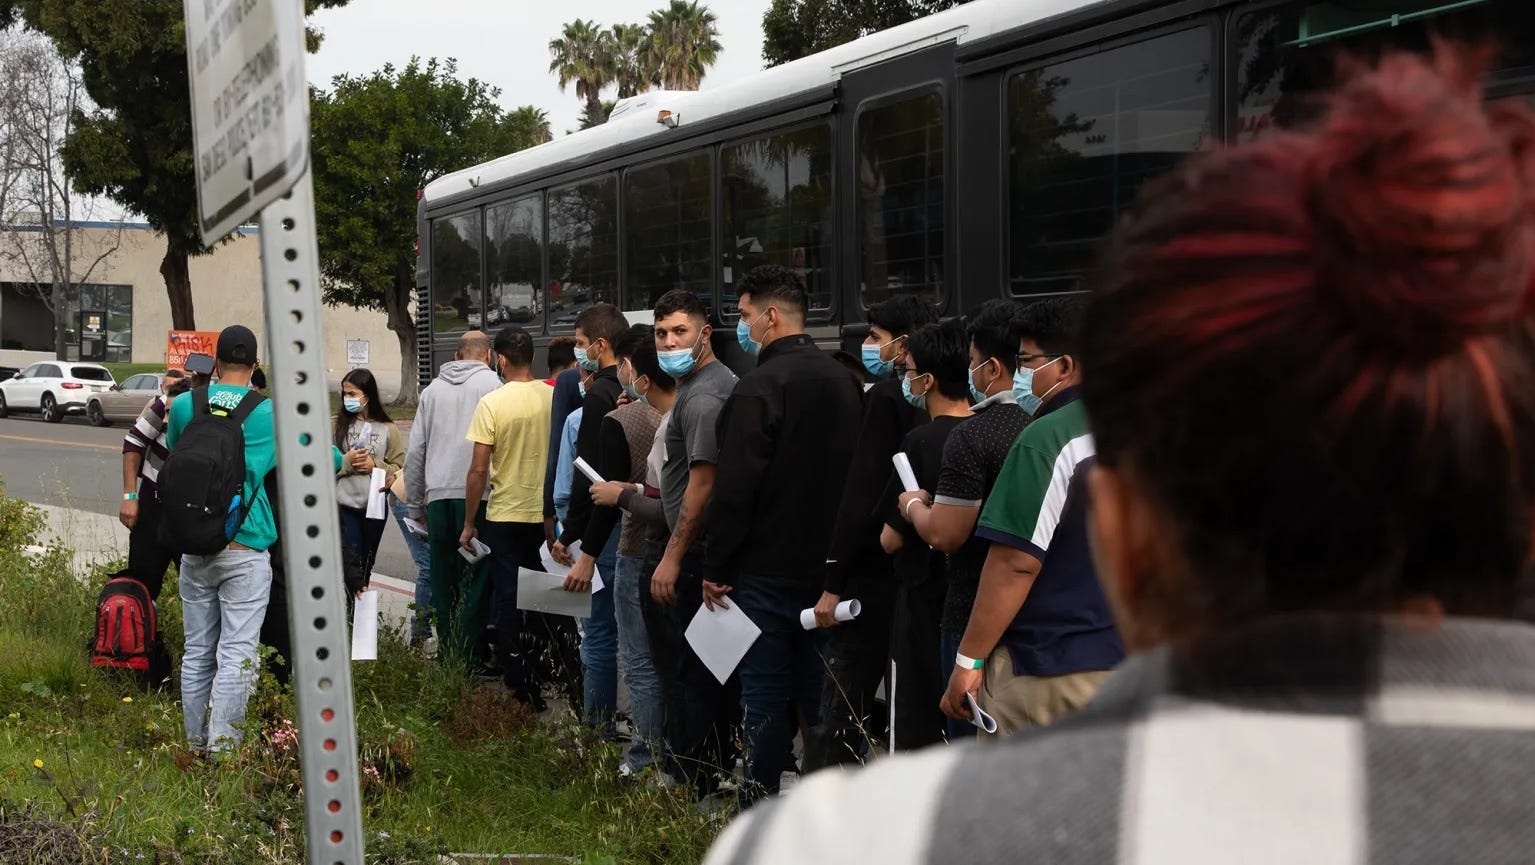 California surpasses Arizona, Texas in migrant arrivals